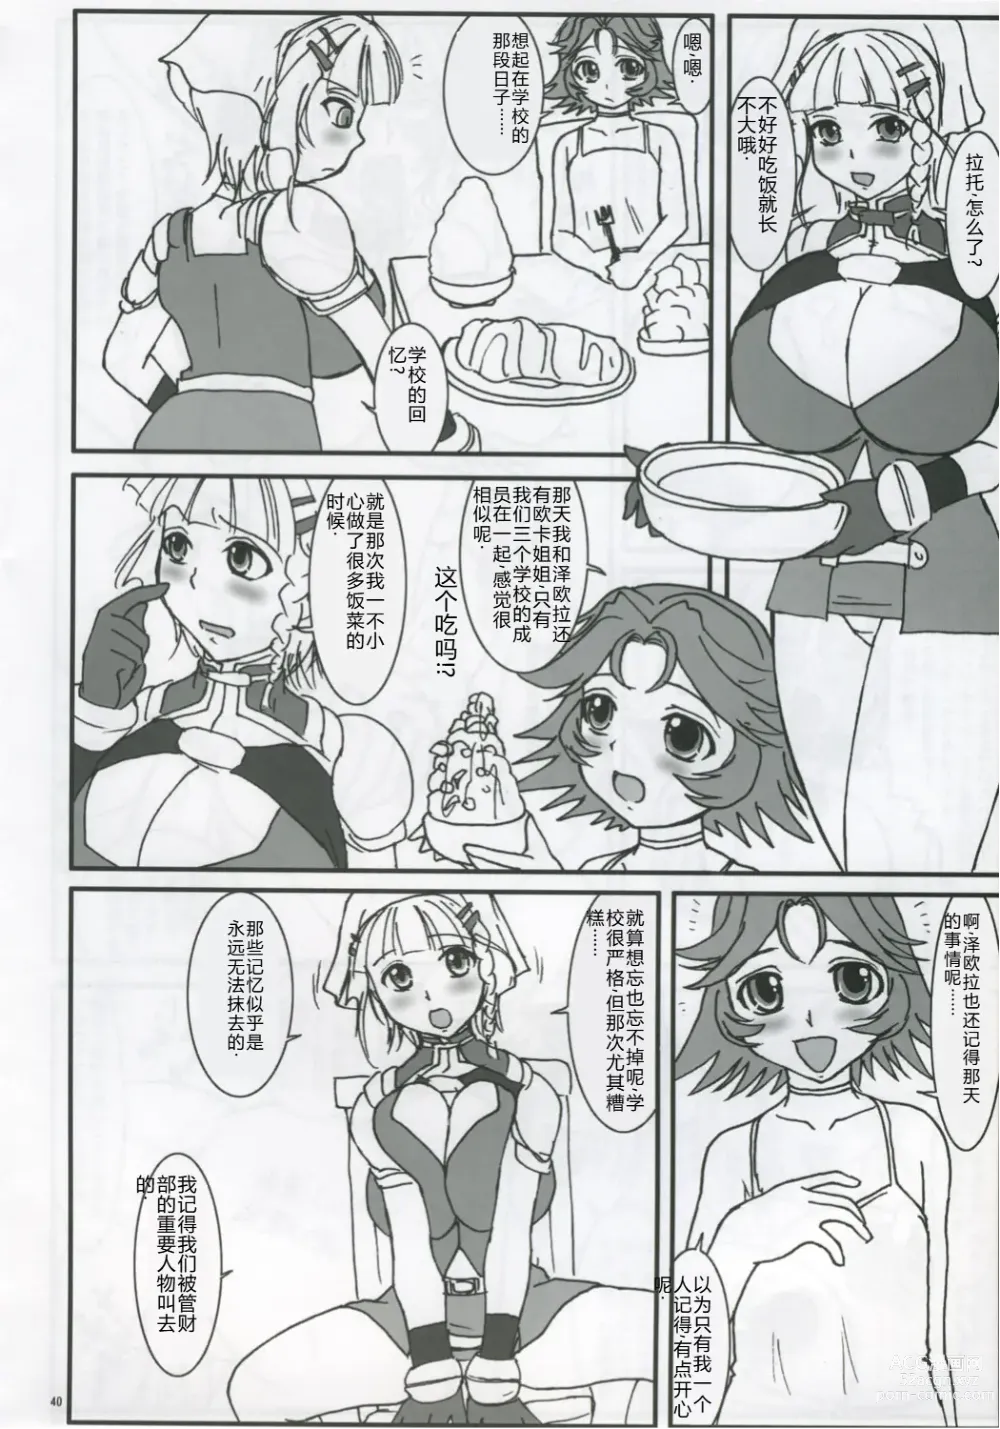 Page 39 of doujinshi Kore ga Heishi no Ikiru Michi